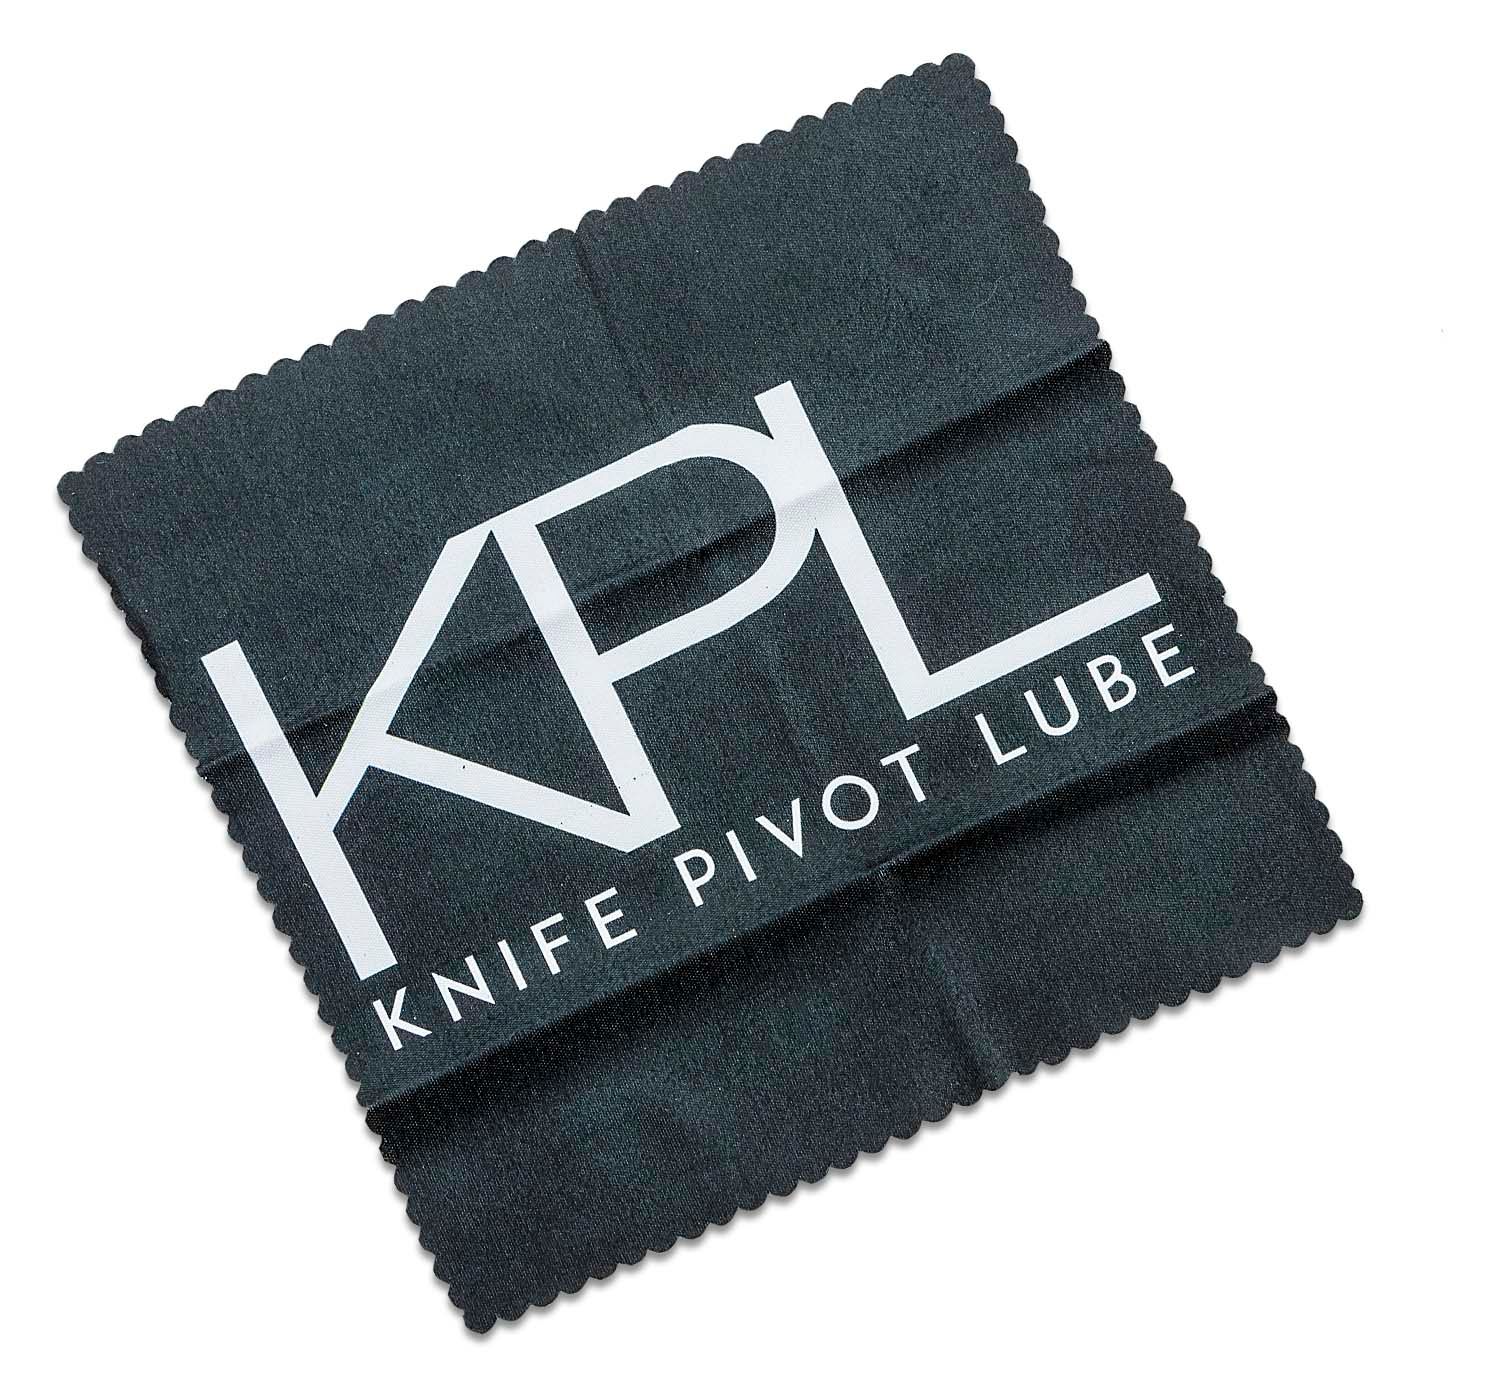 Knife Pivot Lube Basic Bundle